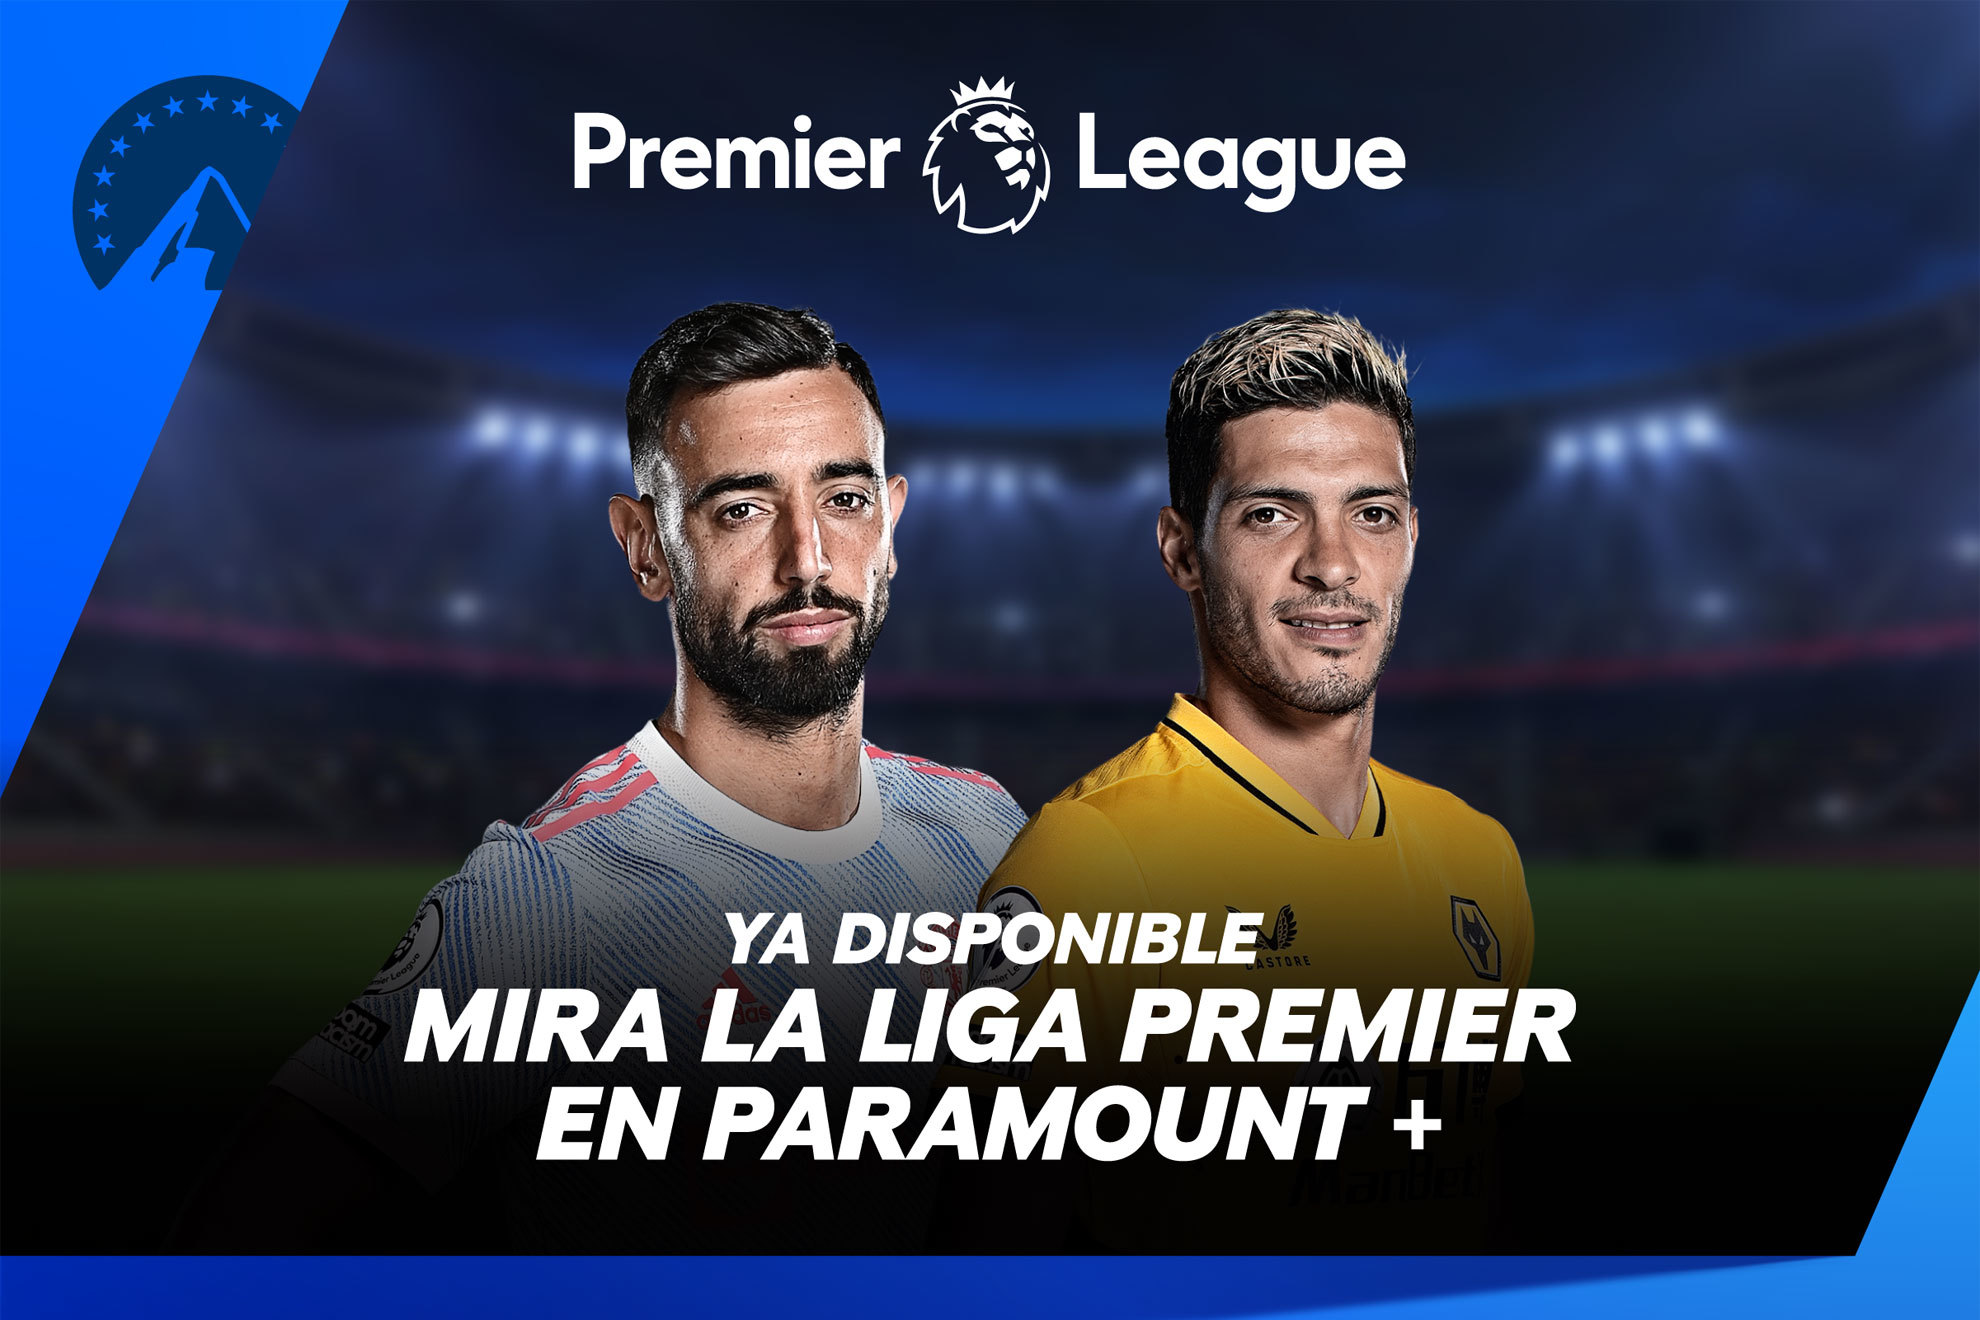 La Liga Premier, en vivo y en exclusiva por Paramount+.